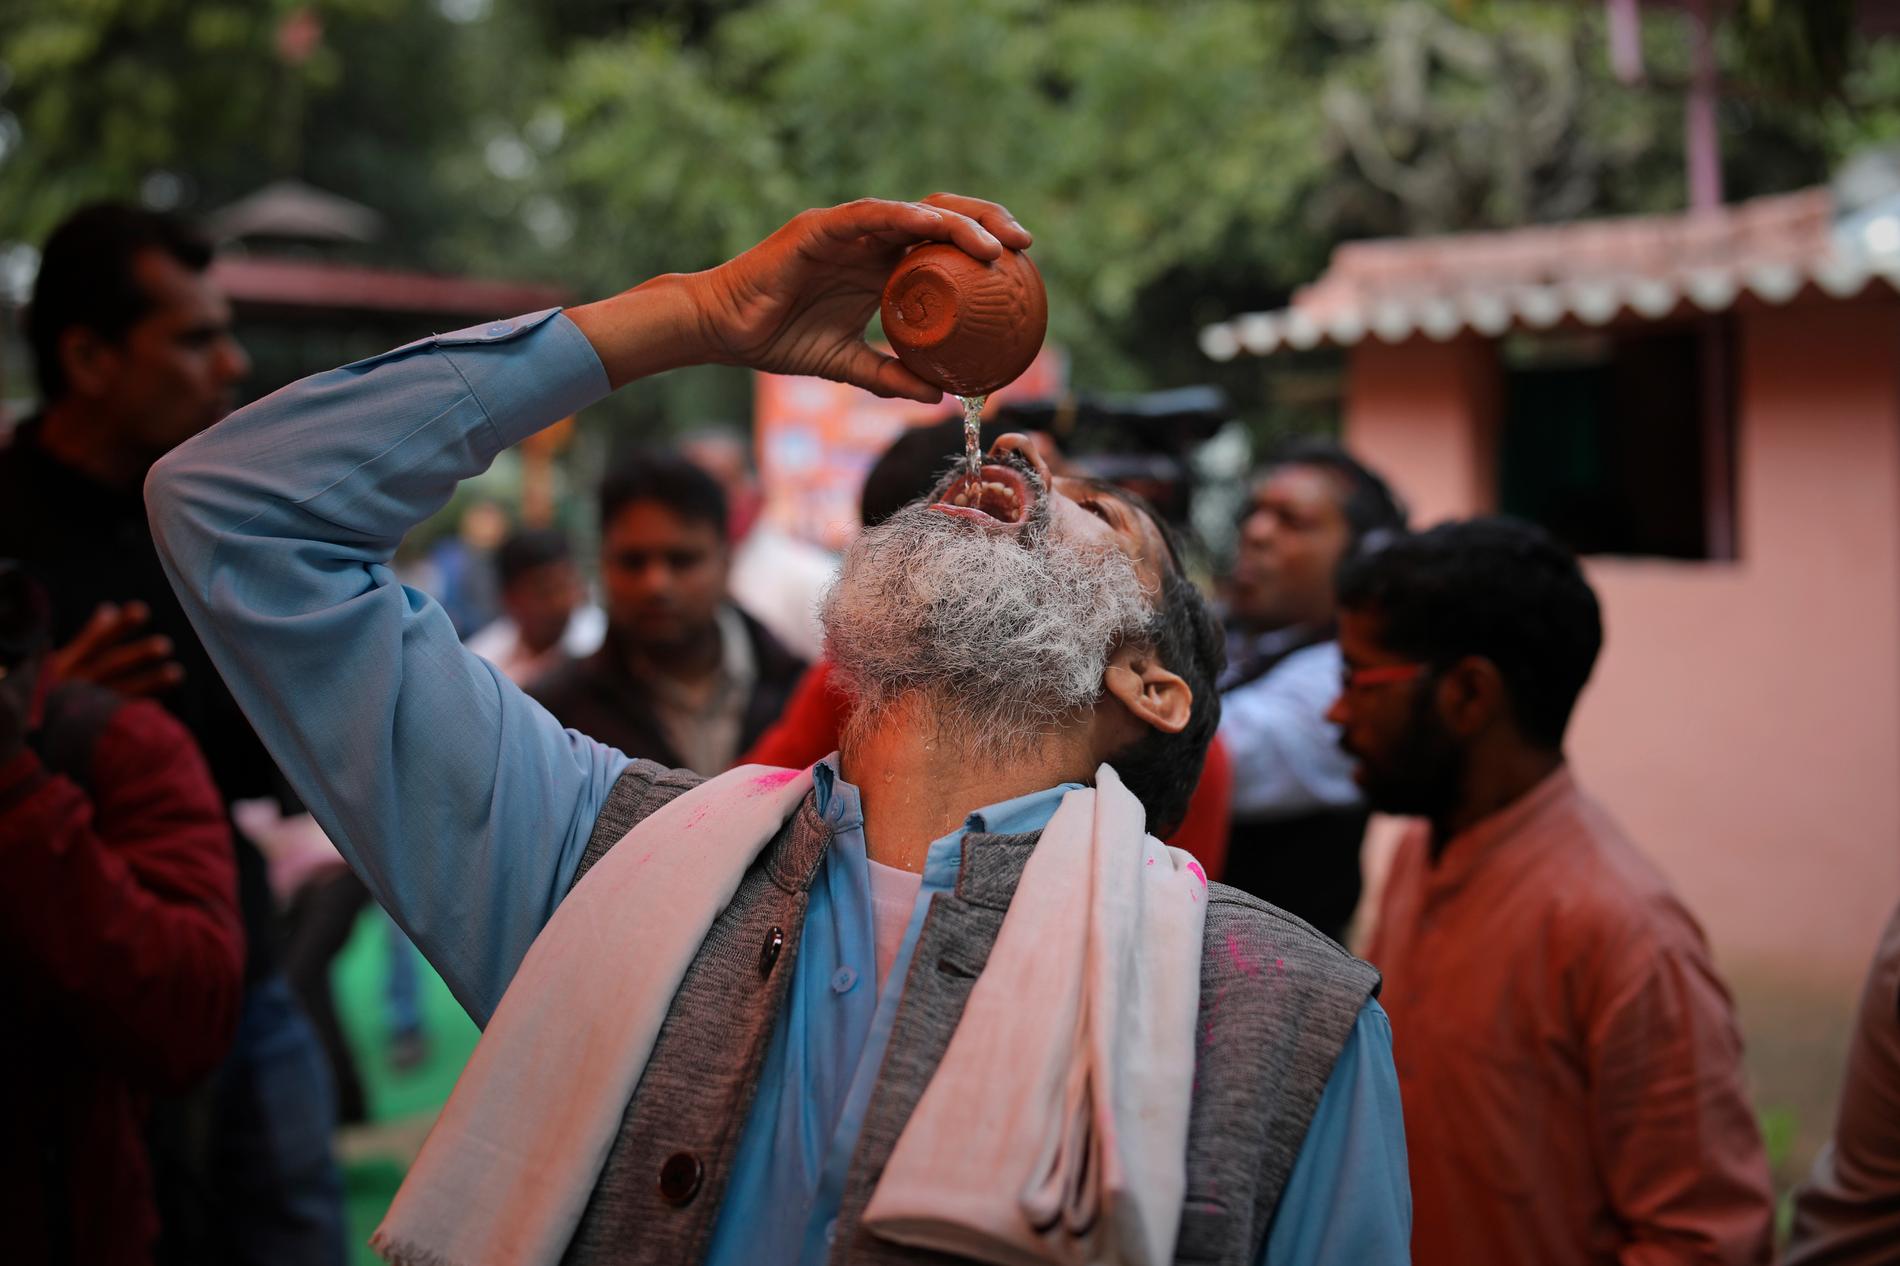 En man indisk dricker gaumutra, eller urin från kor, under ett evenemang i New Delhi i mars.